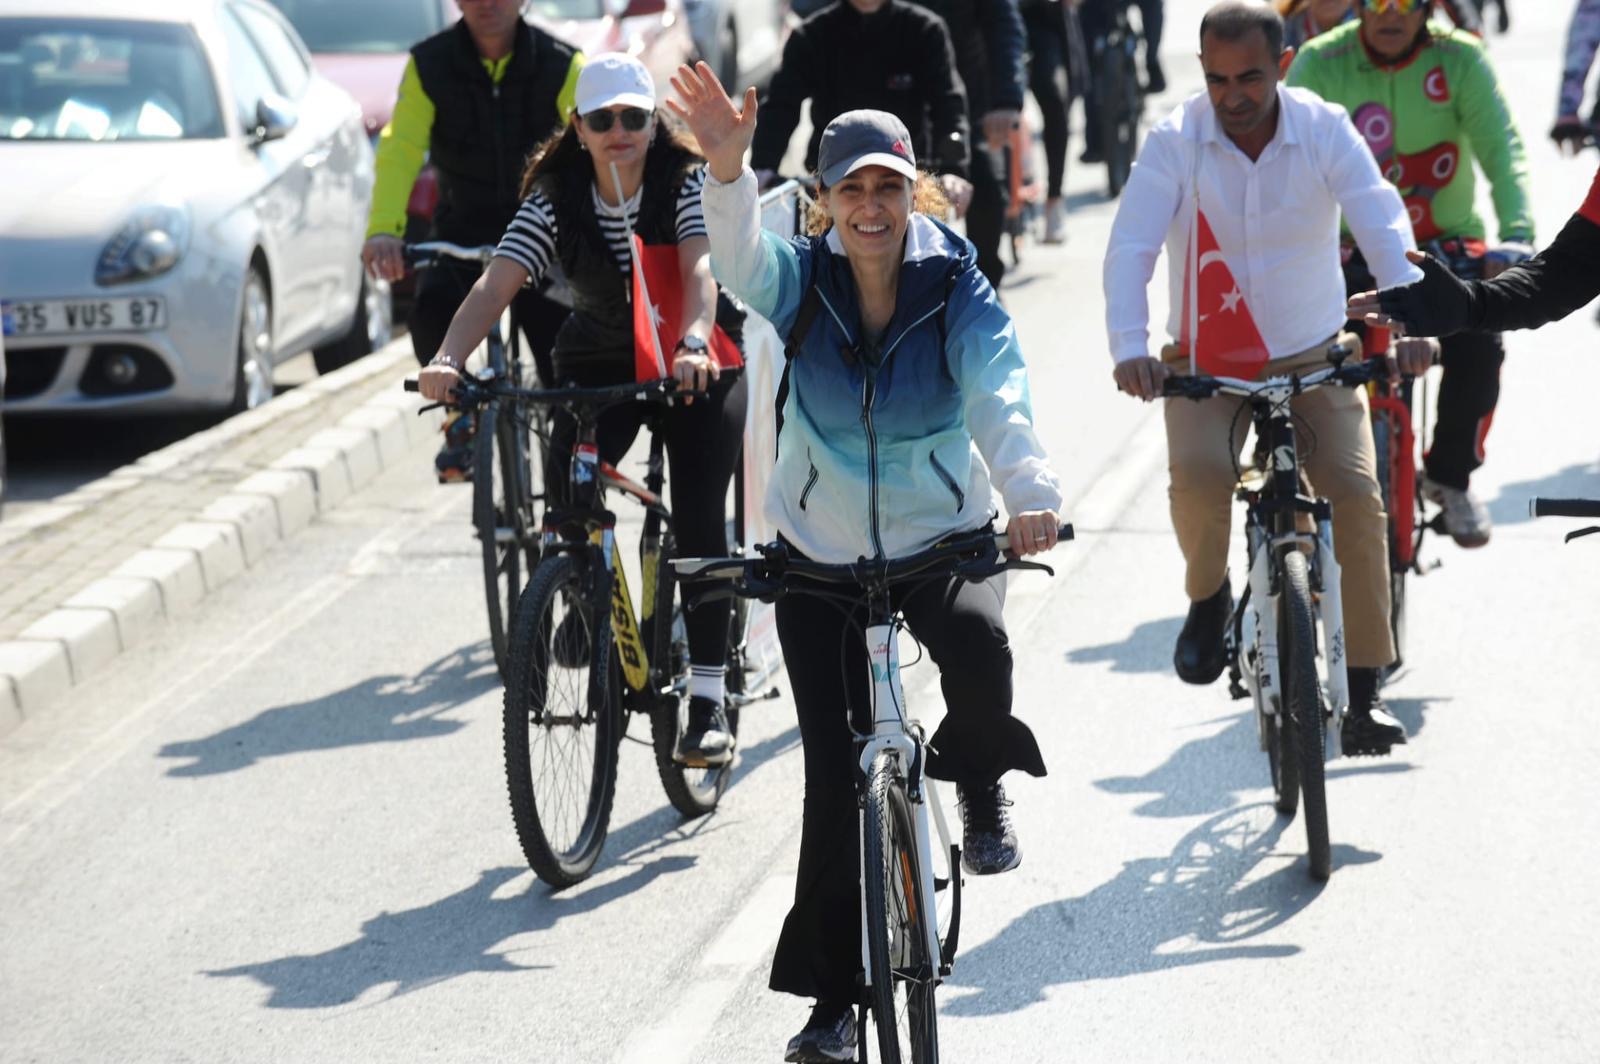 CHP Karşıyaka Adayı Ünsal açıkladı:  “Karşıyaka bisiklet kenti olacak”